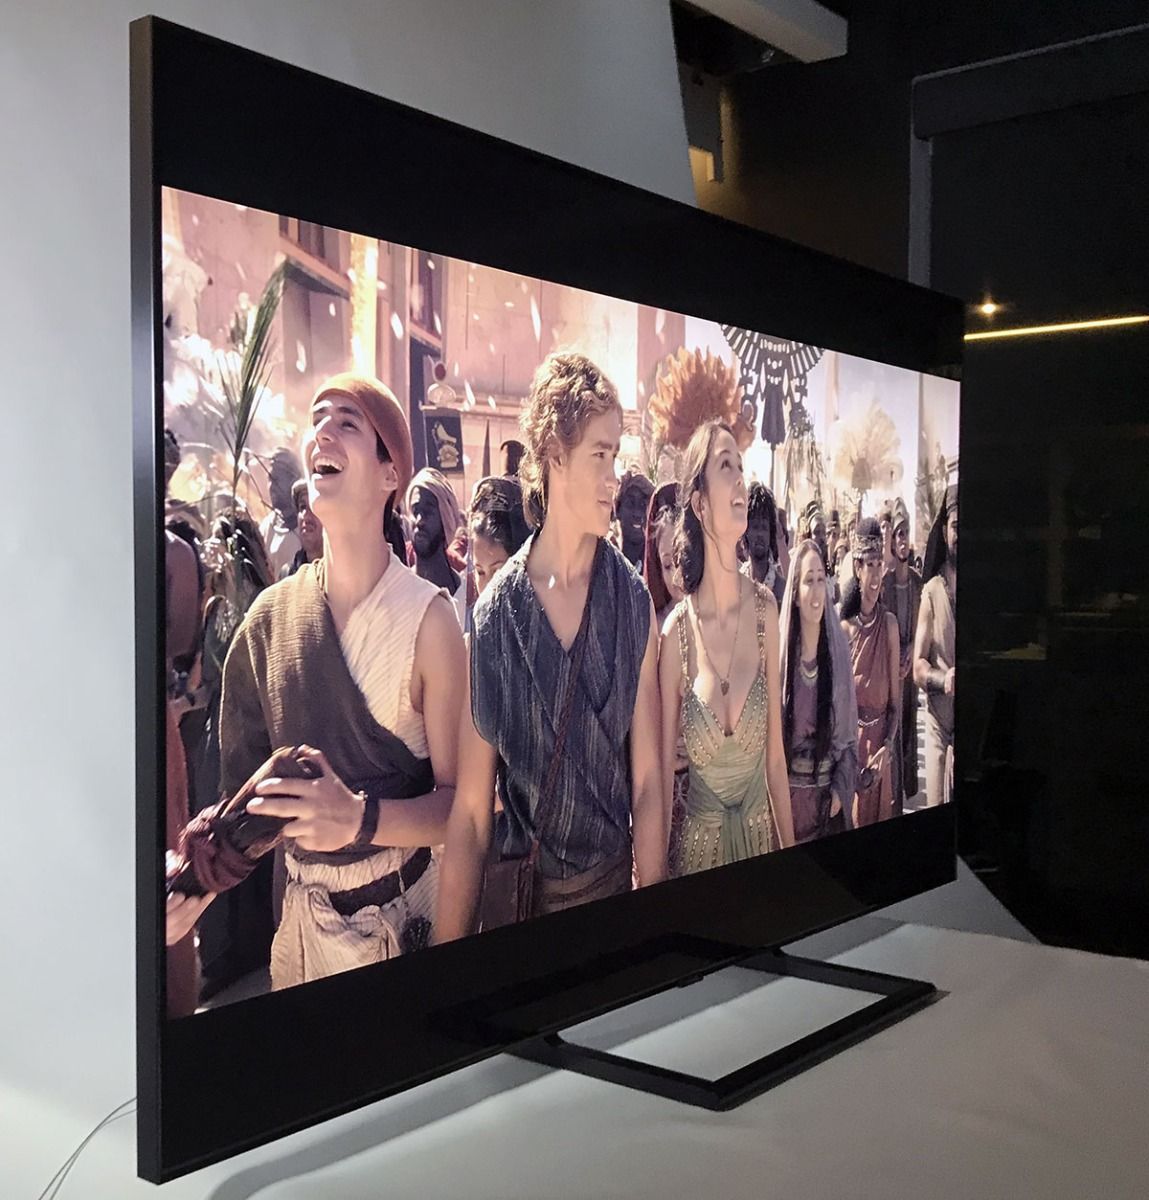 L'angle de visionnement du téléviseur Samsung série Q9FNA.